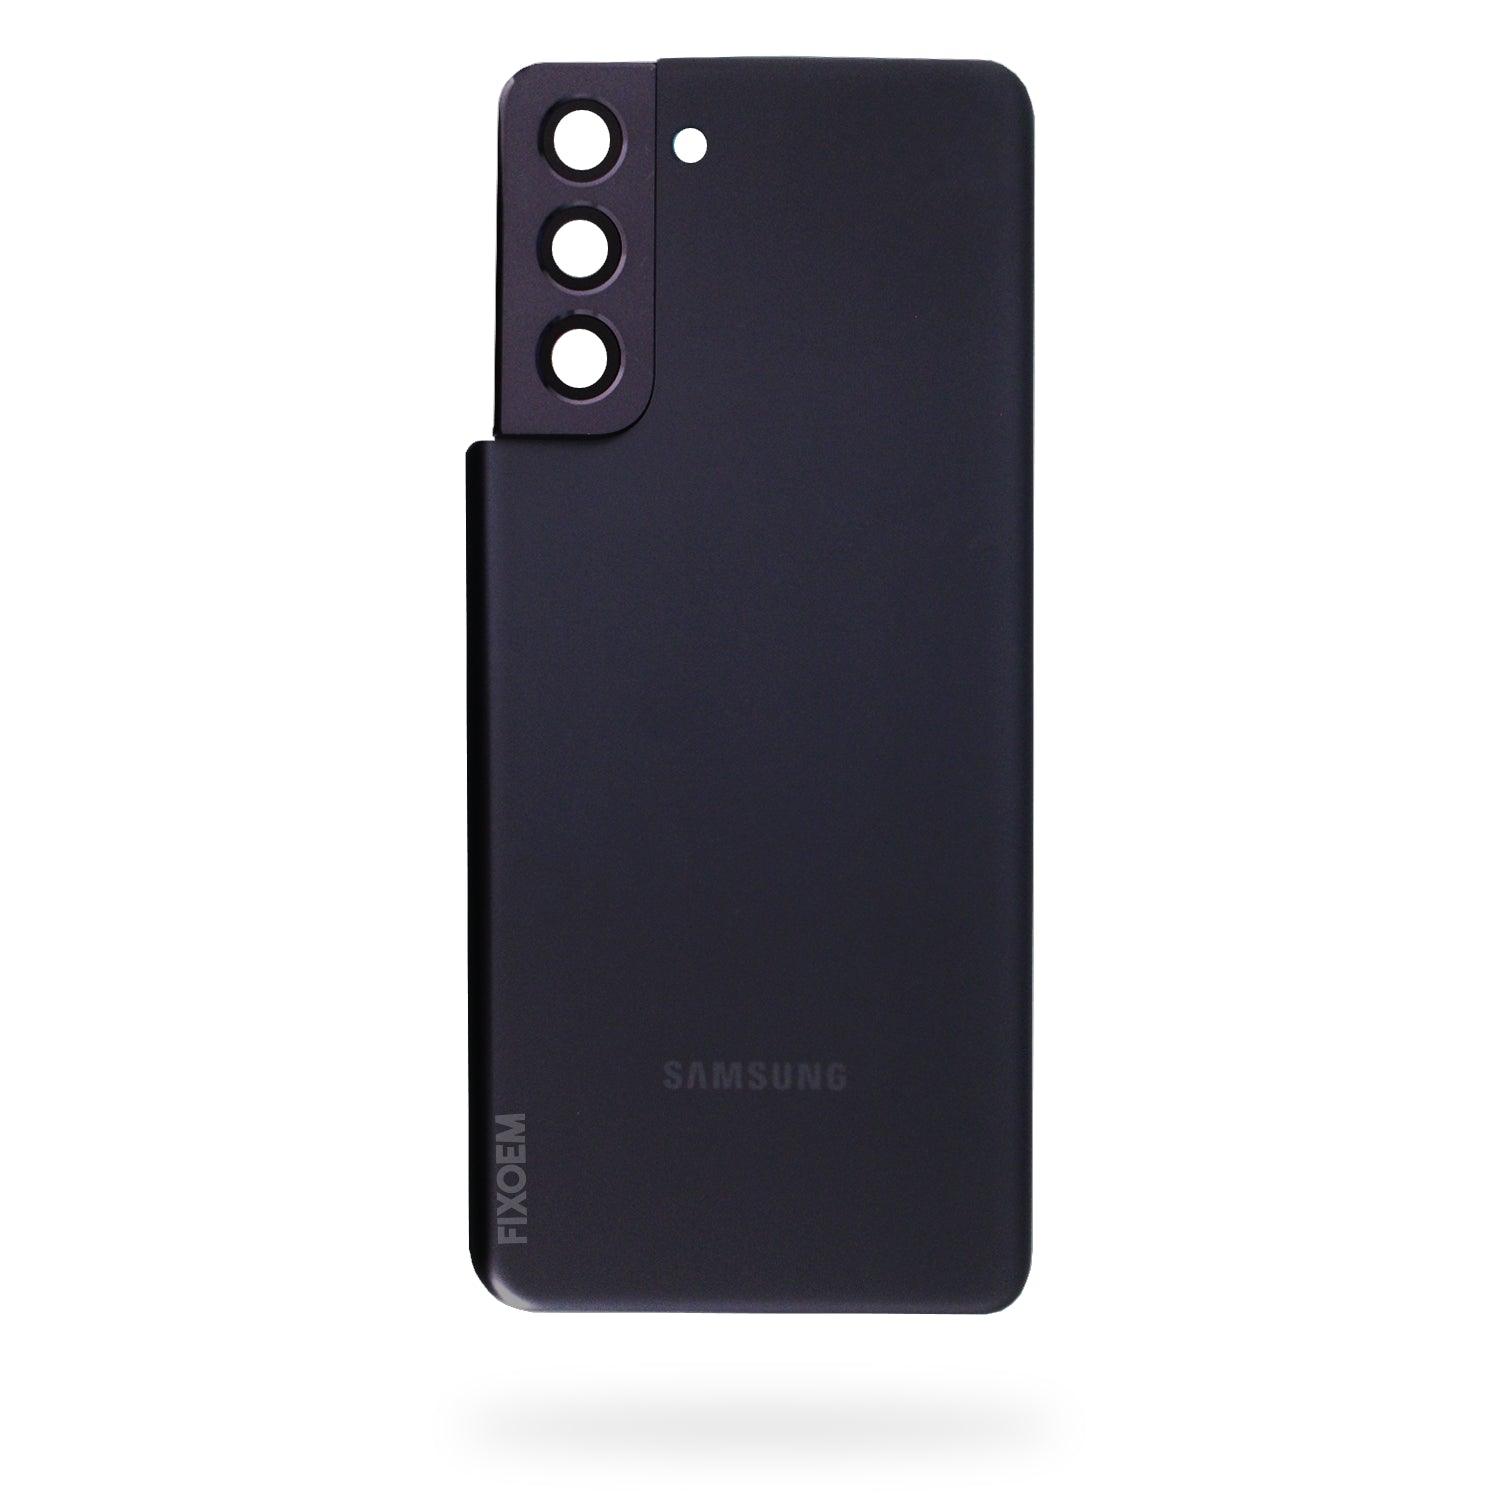 Tapa Trasera Samsung S21 5G G991b a solo $ 100.00 Refaccion y puestos celulares, refurbish y microelectronica.- FixOEM